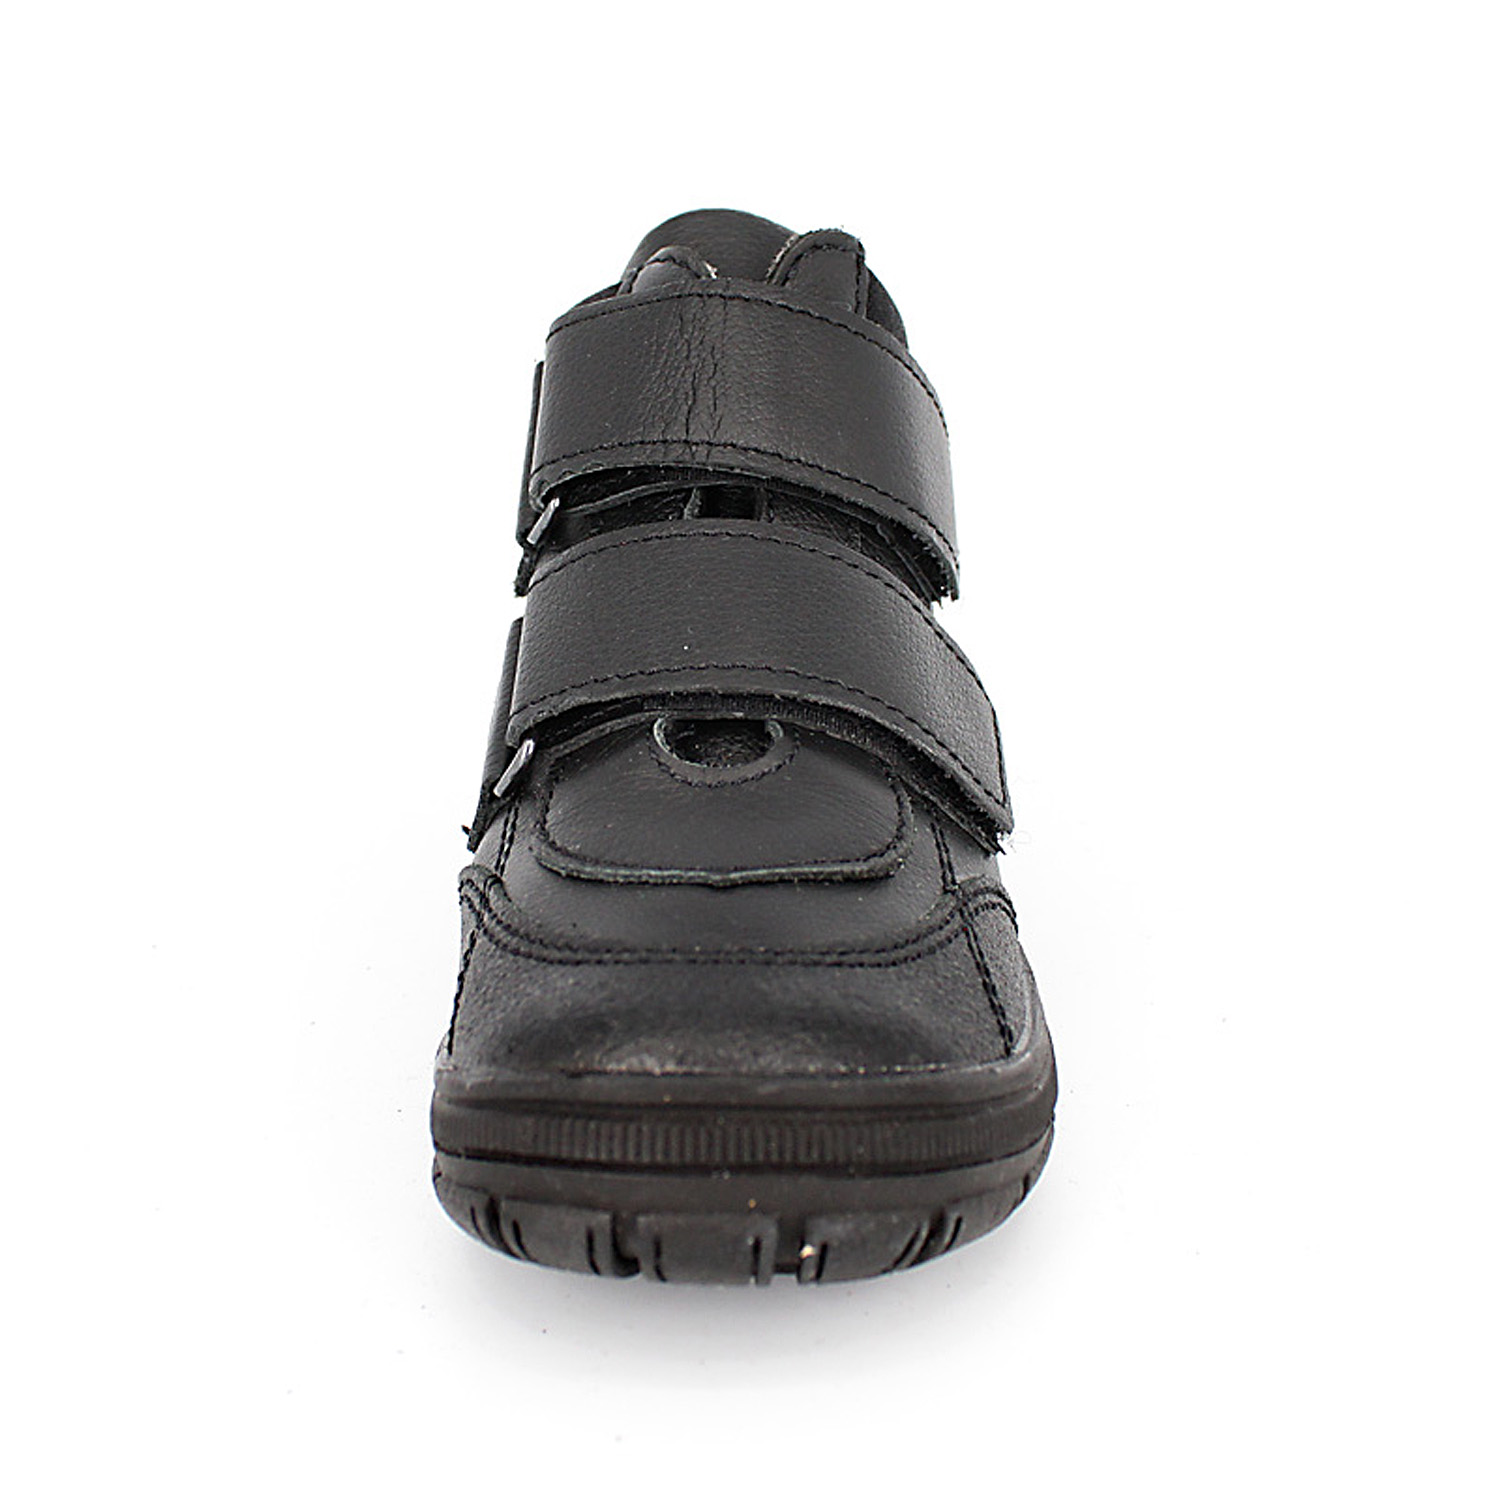 Ботинки ЛЕЛЬ м 3-124 Ботинки дошкольные байка (хром черный) - фото 3